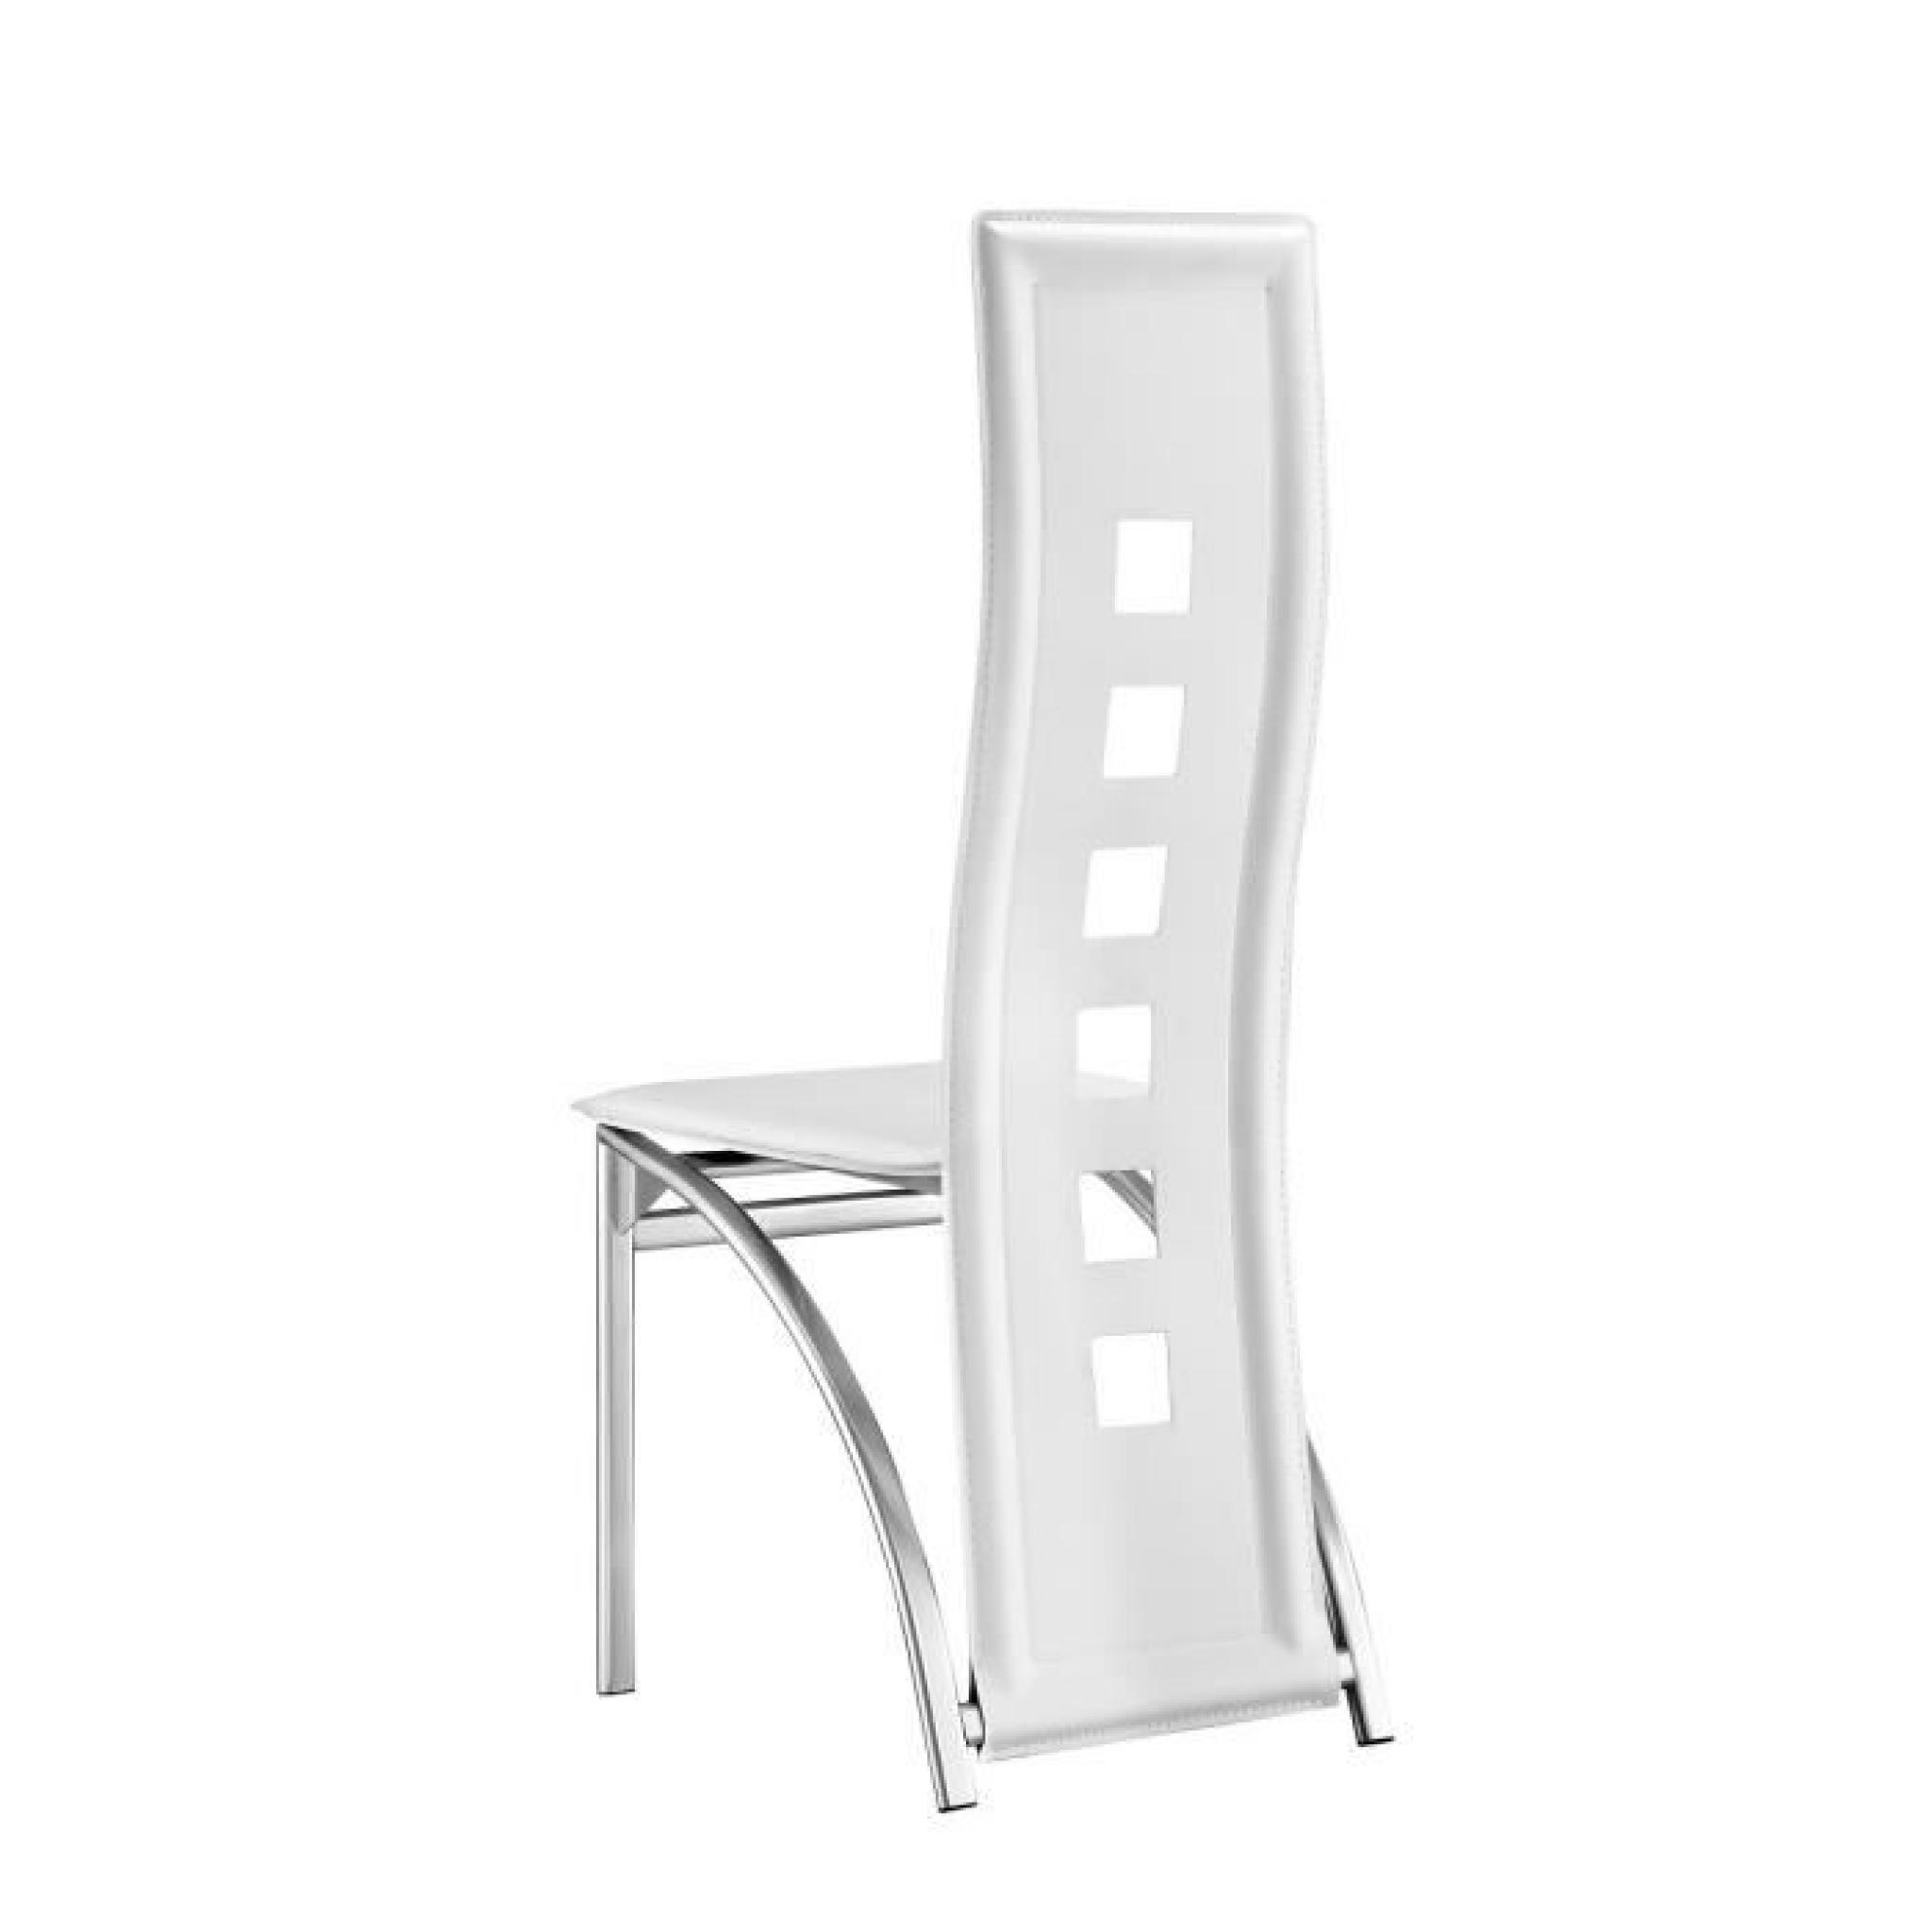 EIFFEL lot de 2 chaises de salle à manger blanches  simili et aluminium - Design pas cher